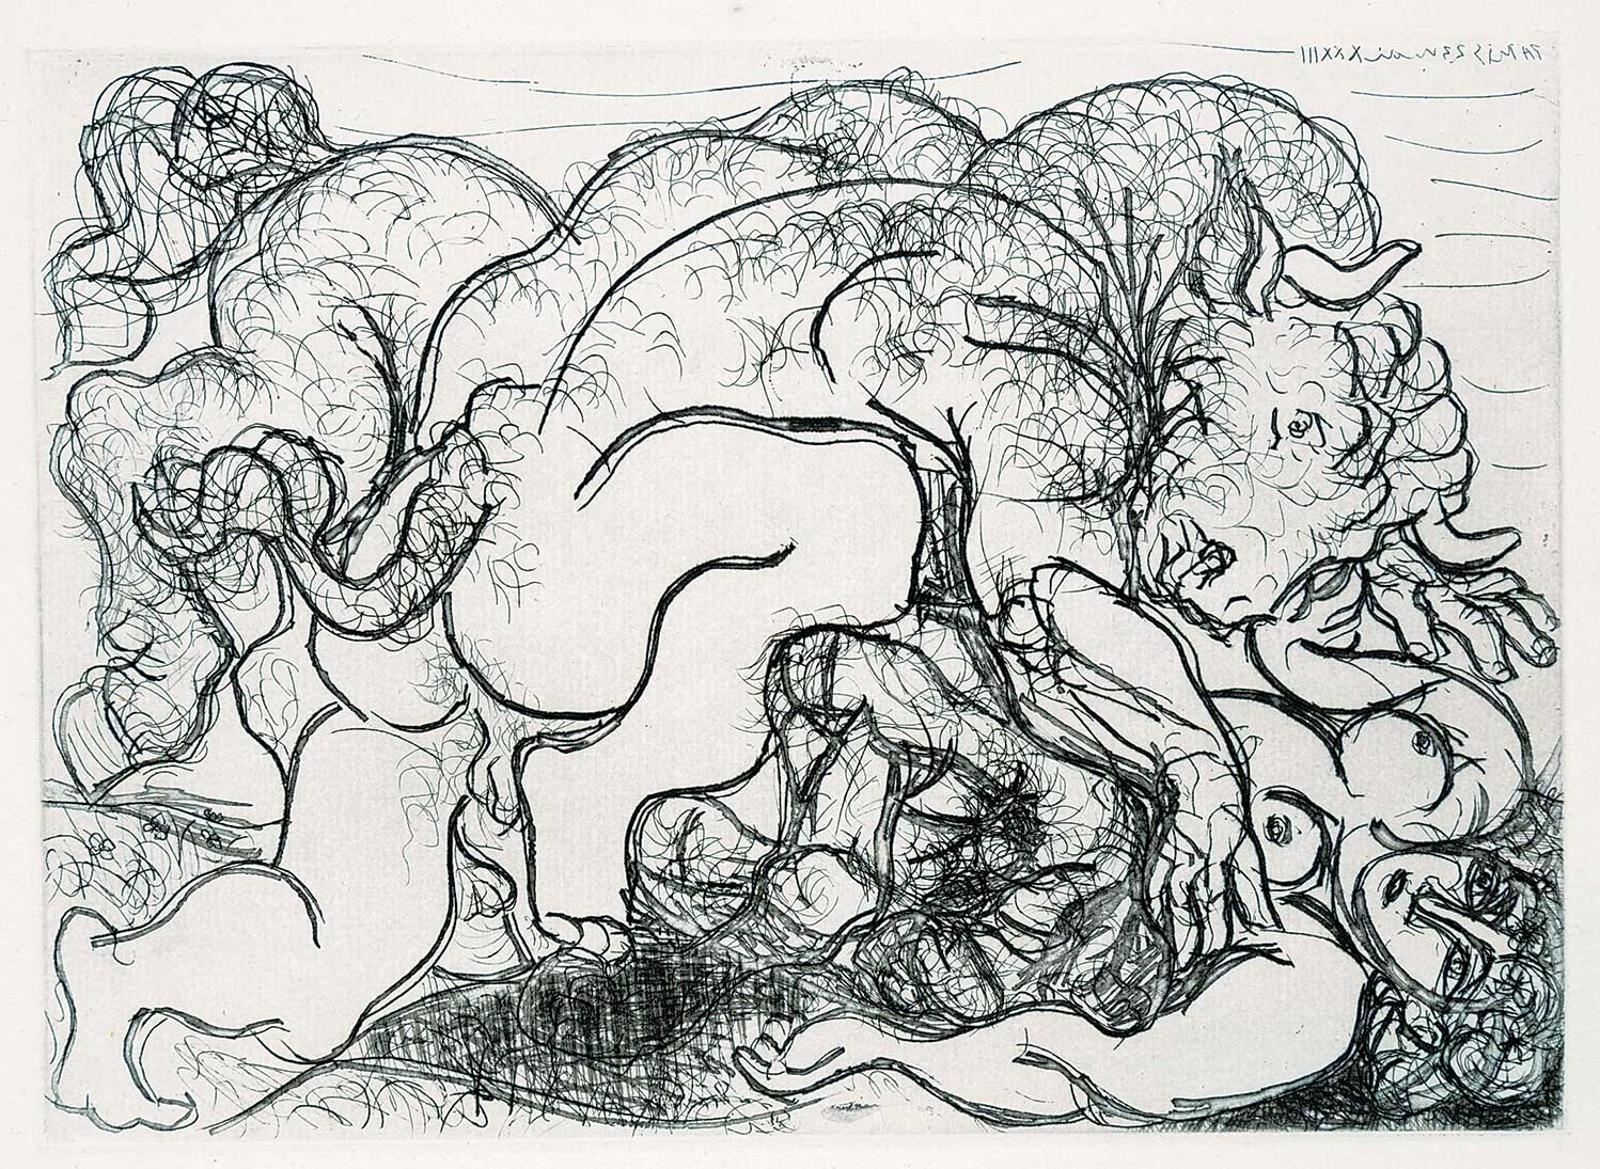 Pablo Ruiz Picasso (1881-1973) - Minotaur Attacking an Amazon [Minotaure Attaquant une Amazone]